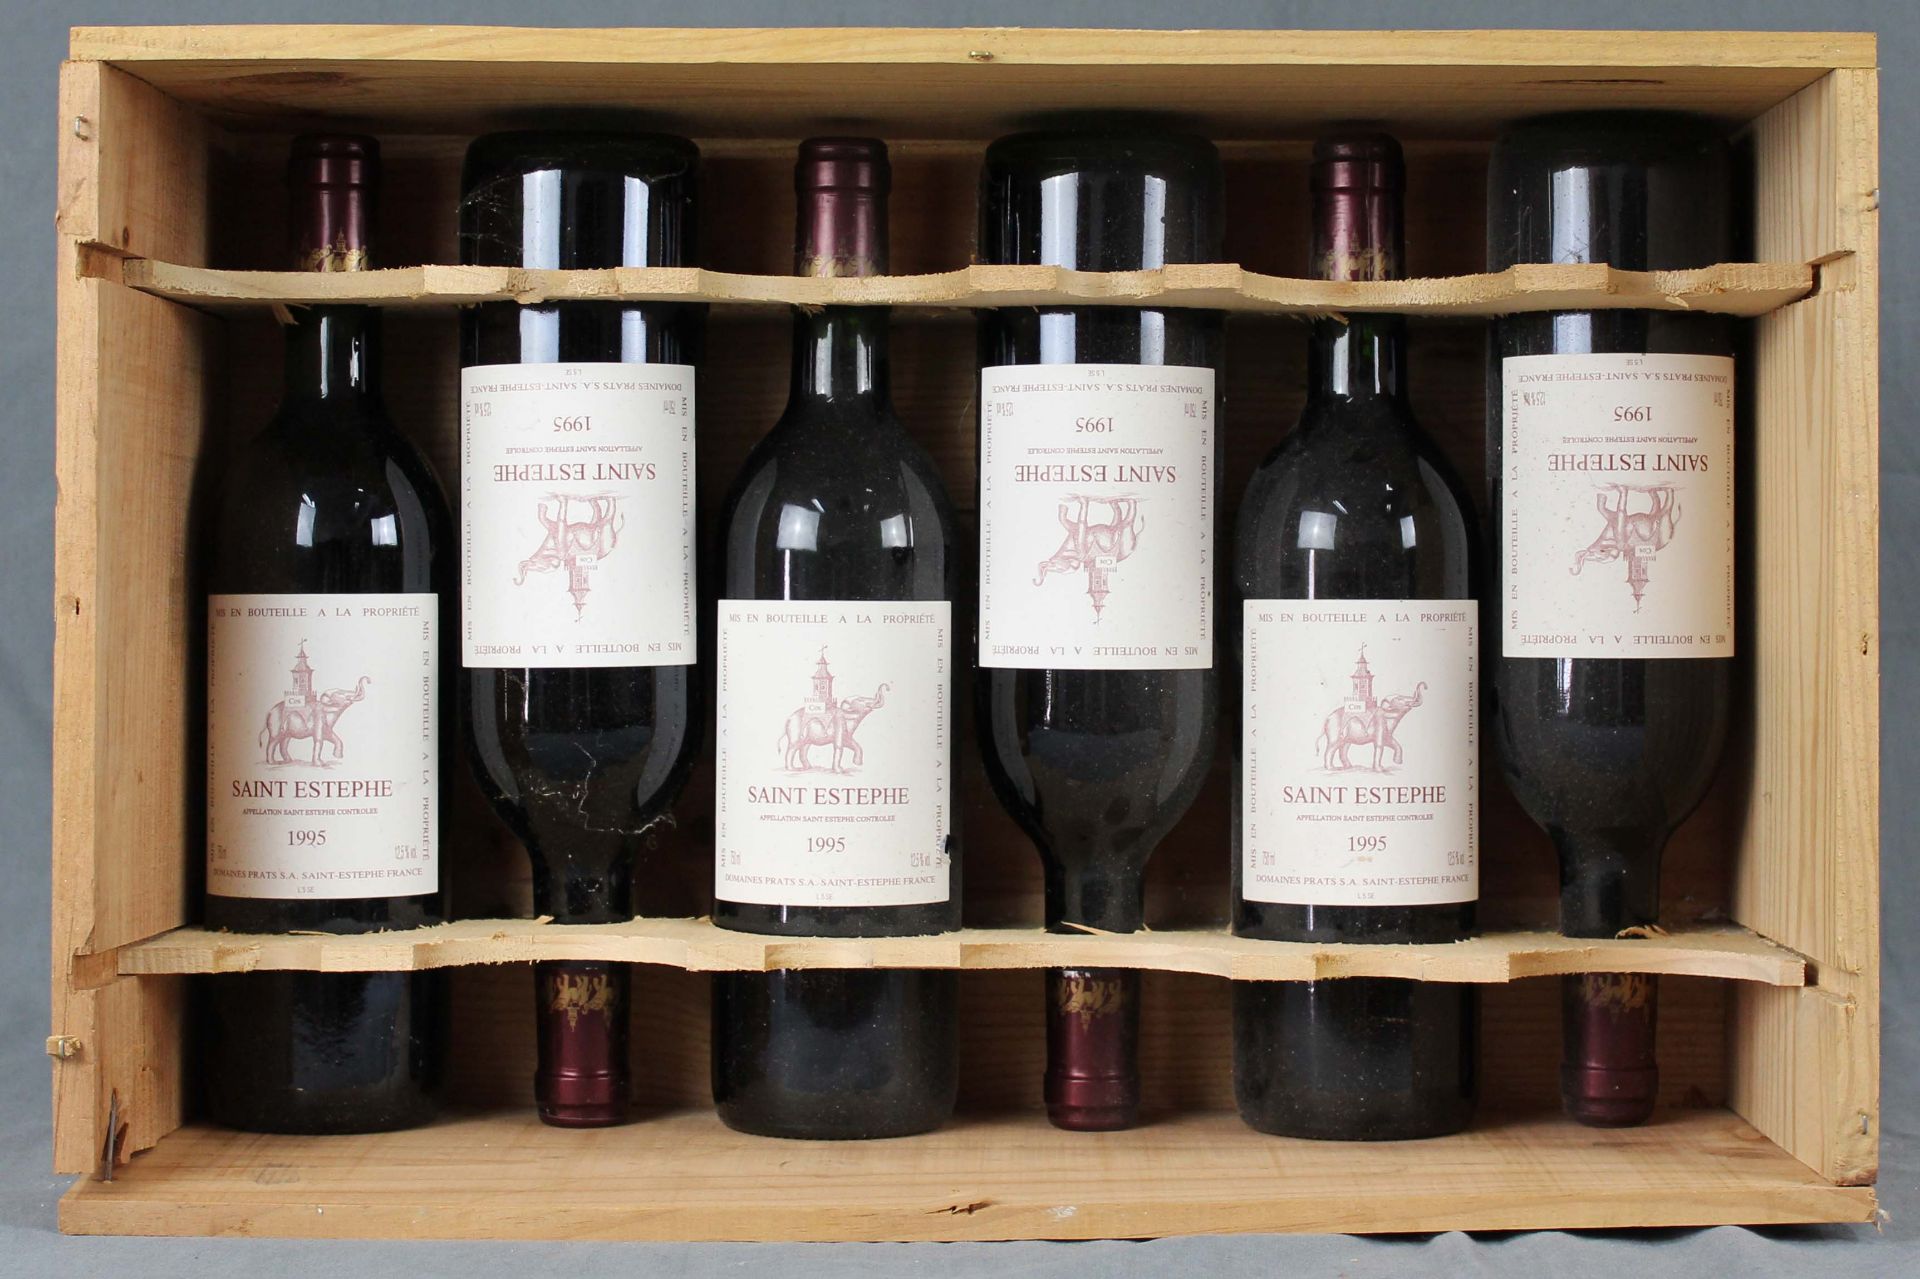 1995 Cos, Saint Estephe AC, Domaines Prats S.A.6 whole bottles. 750 ml, 12.5% Vol. Label with the